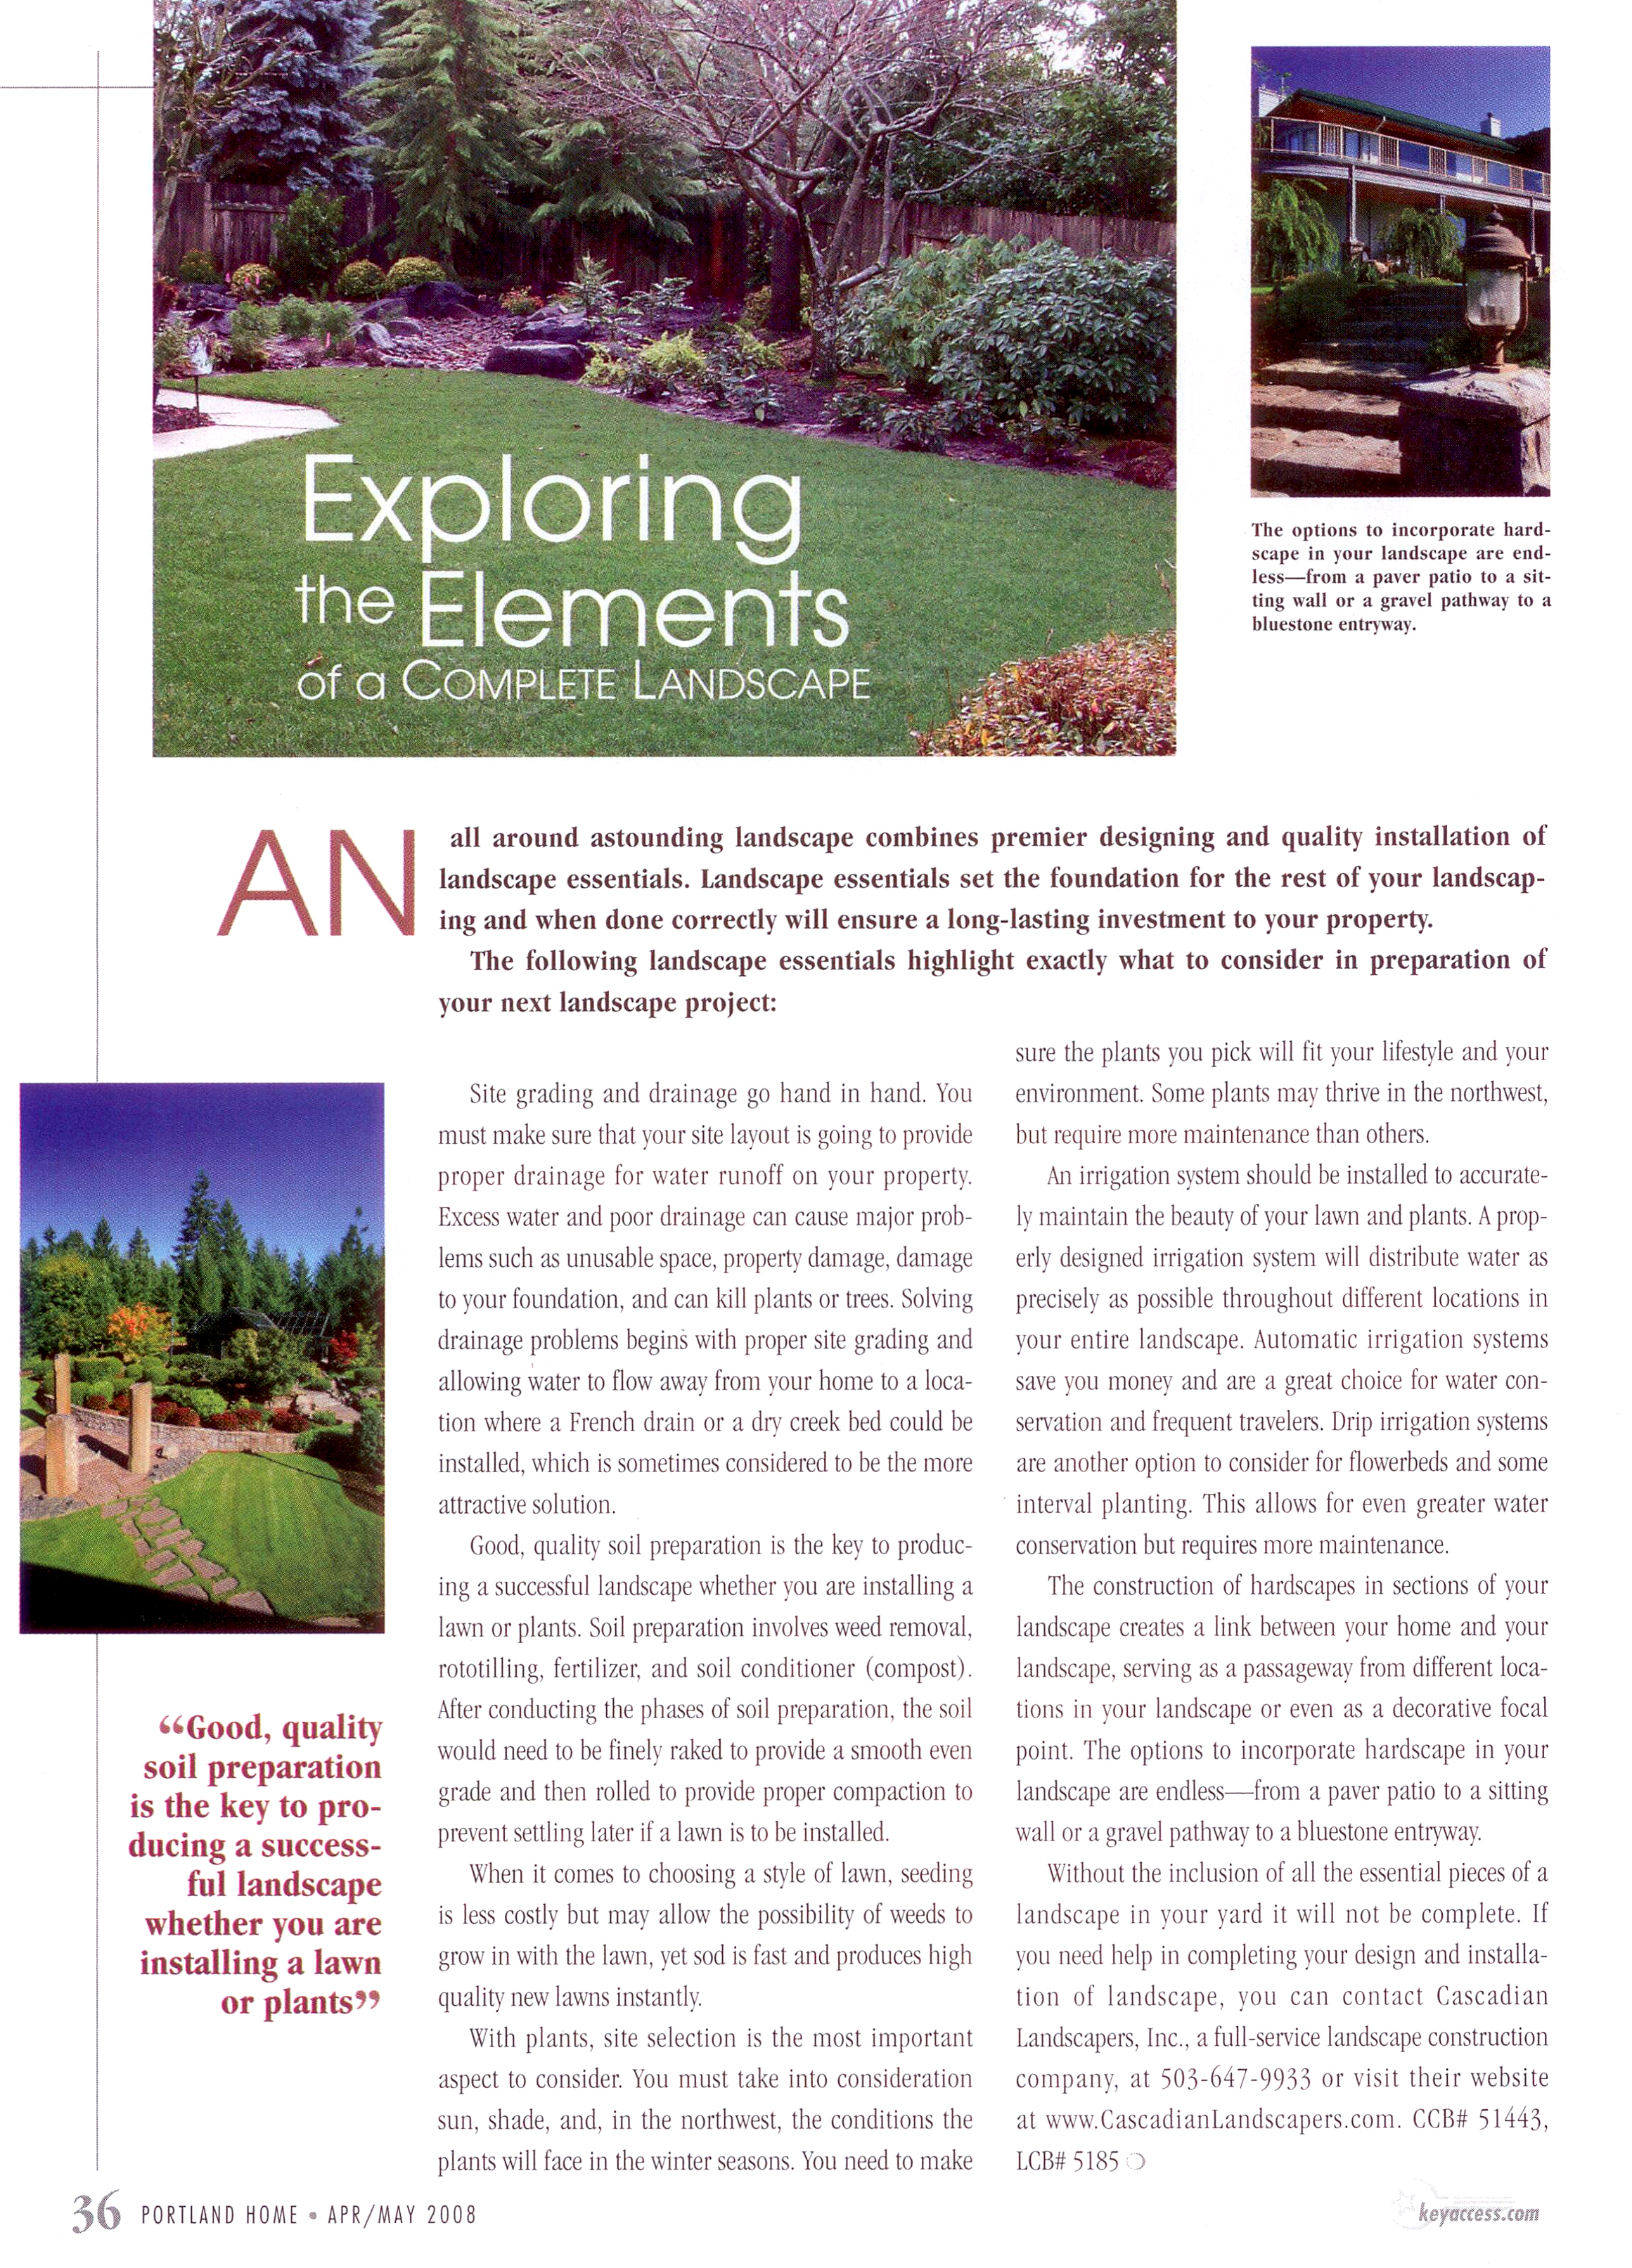 Complete Landscape Elements Article